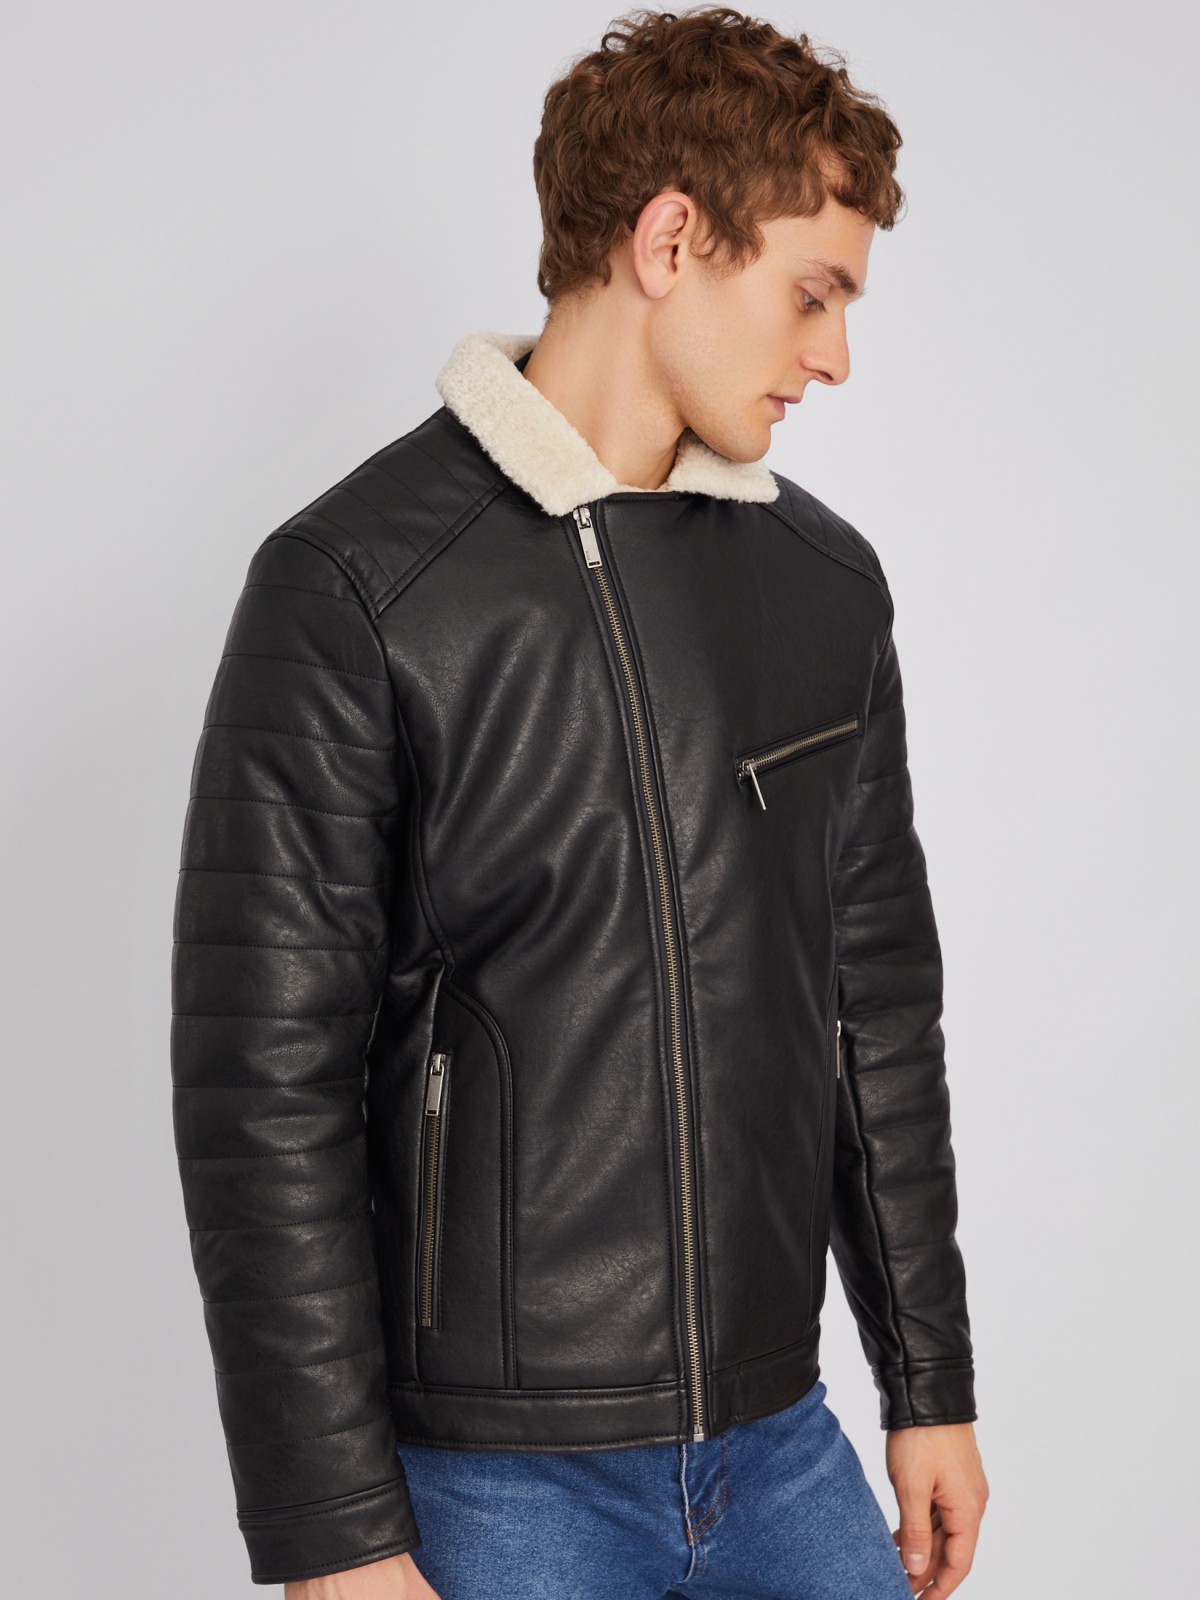 Тёплая куртка-косуха из экокожи с подкладкой из экомеха на синтепоне zolla 012345150154, цвет черный, размер L - фото 3